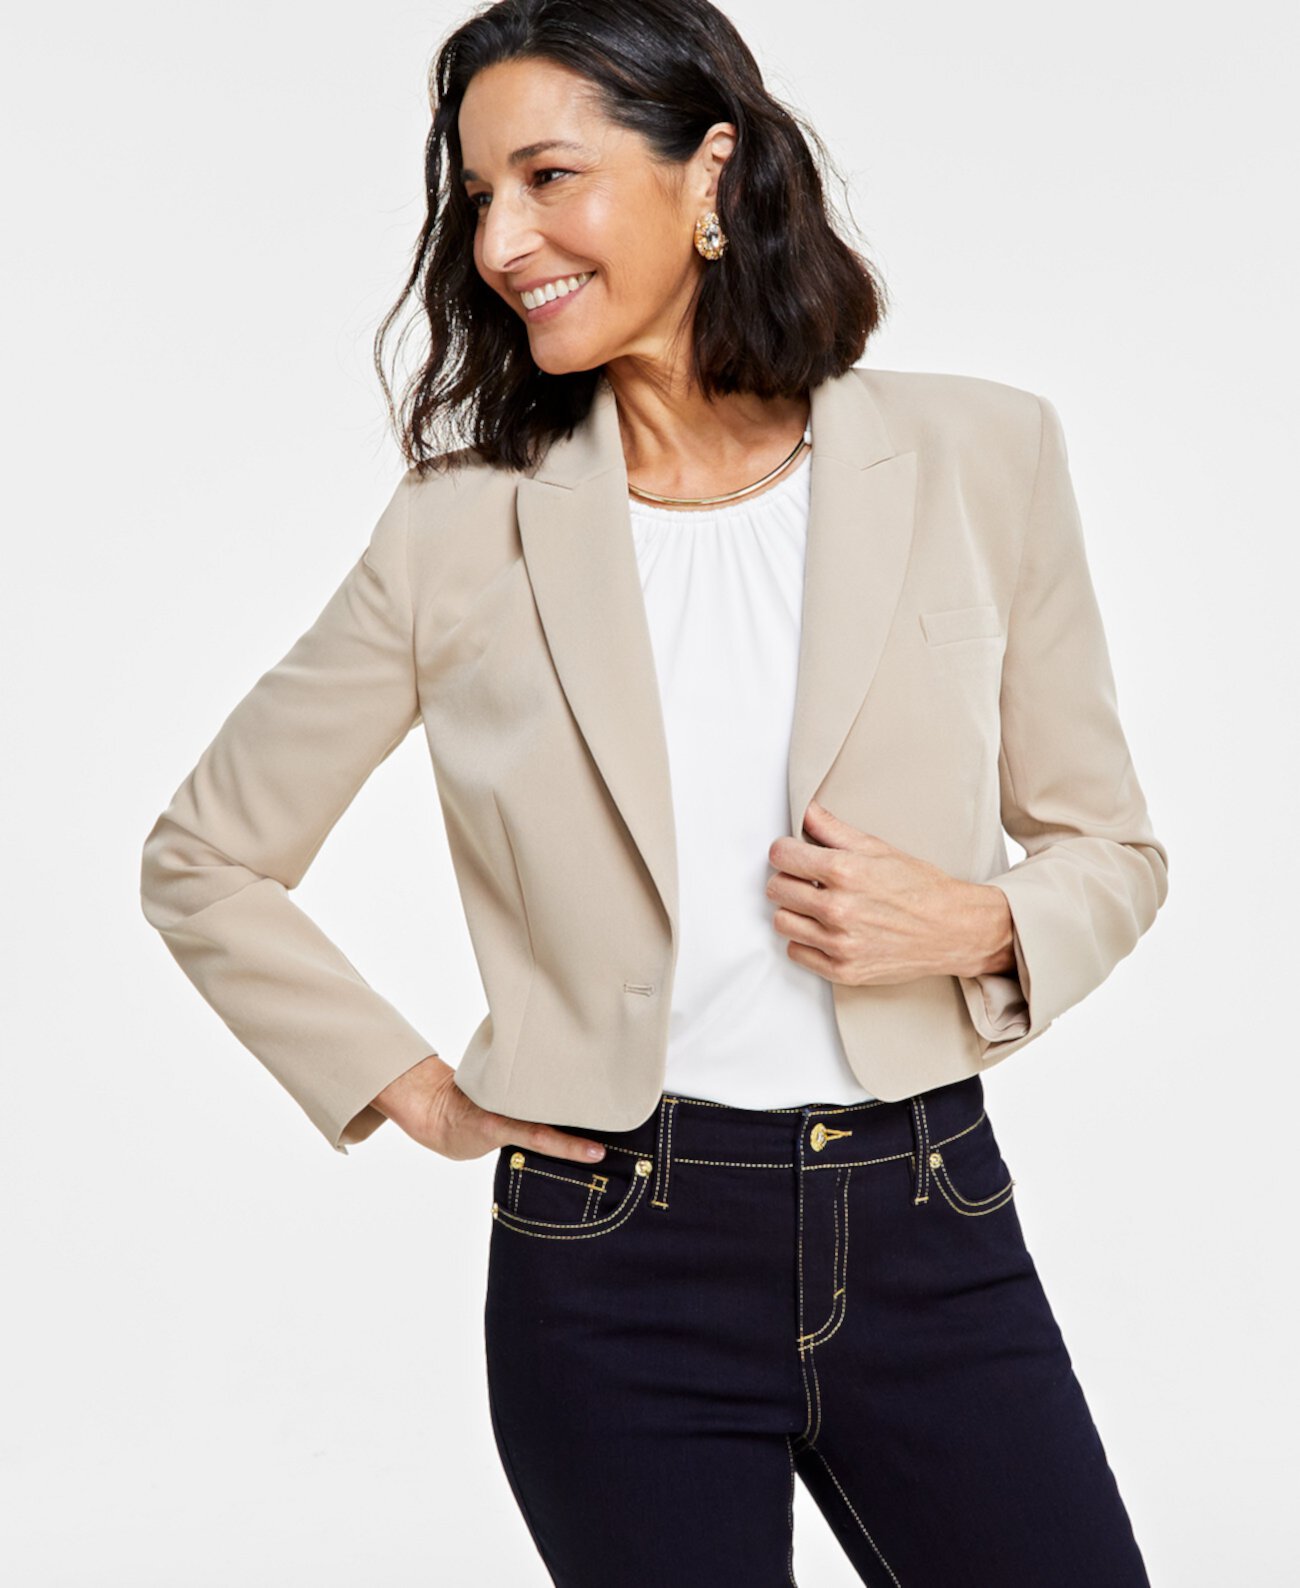 Женский укороченный пиджак на одной пуговице, созданный для Macy's I.N.C. International Concepts